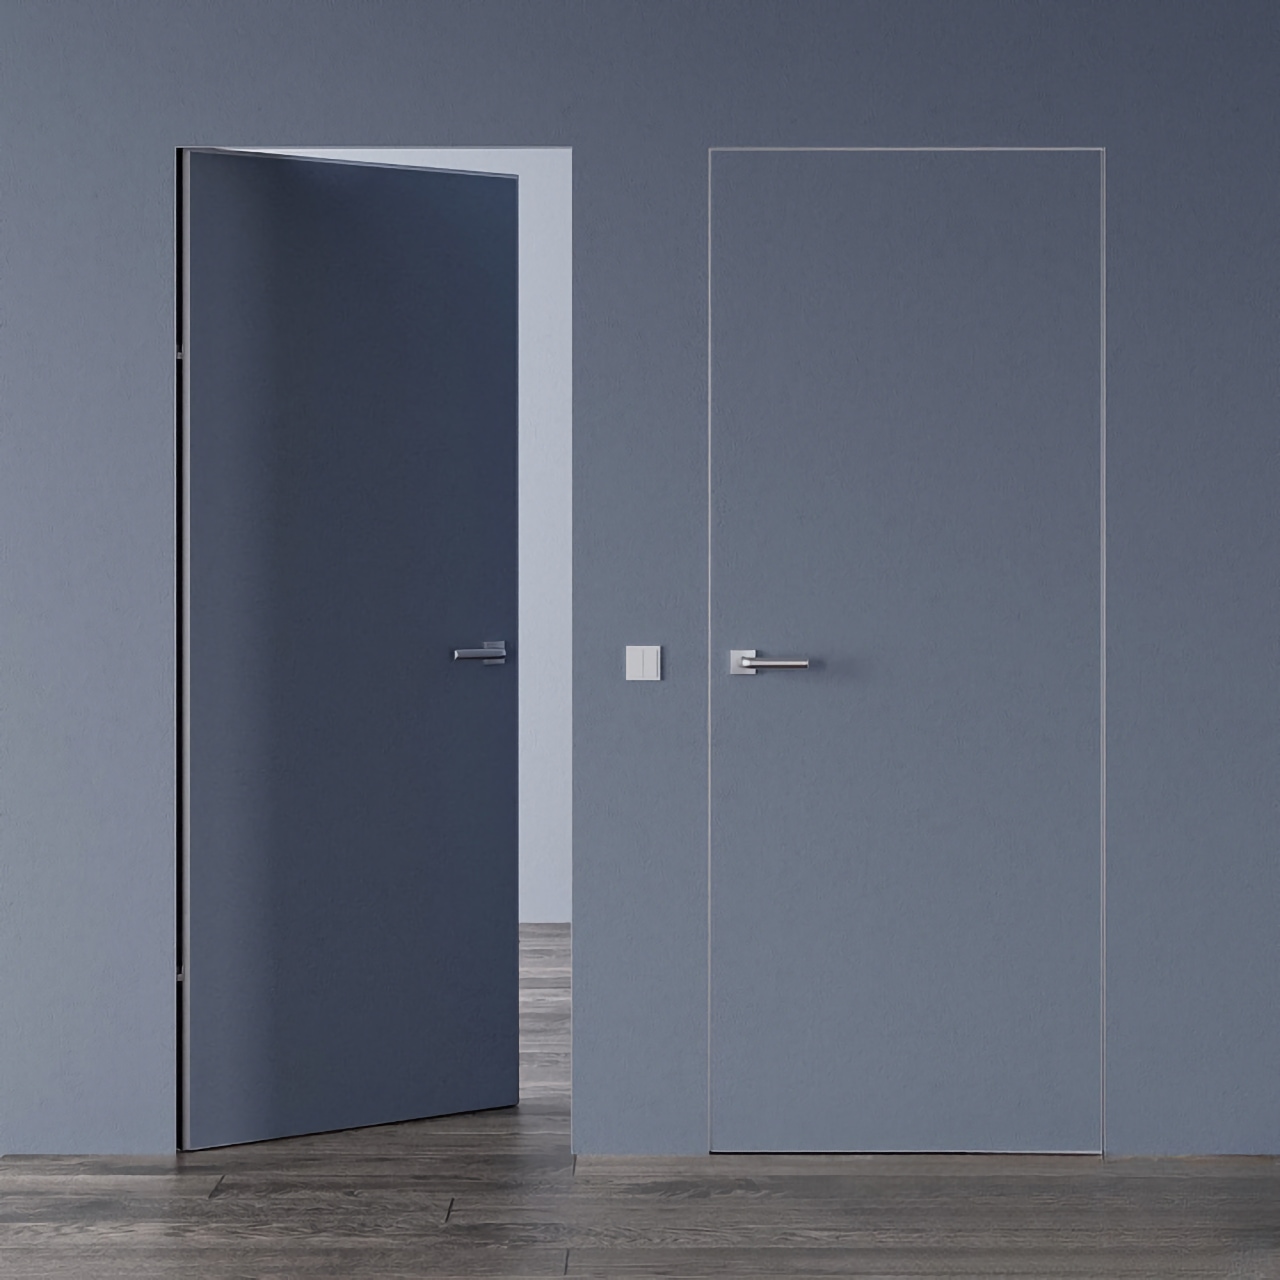 Скрытые двери под покраску межкомнатные • Smart Invisible с алюминиевым серым торцом внутреннее открывание